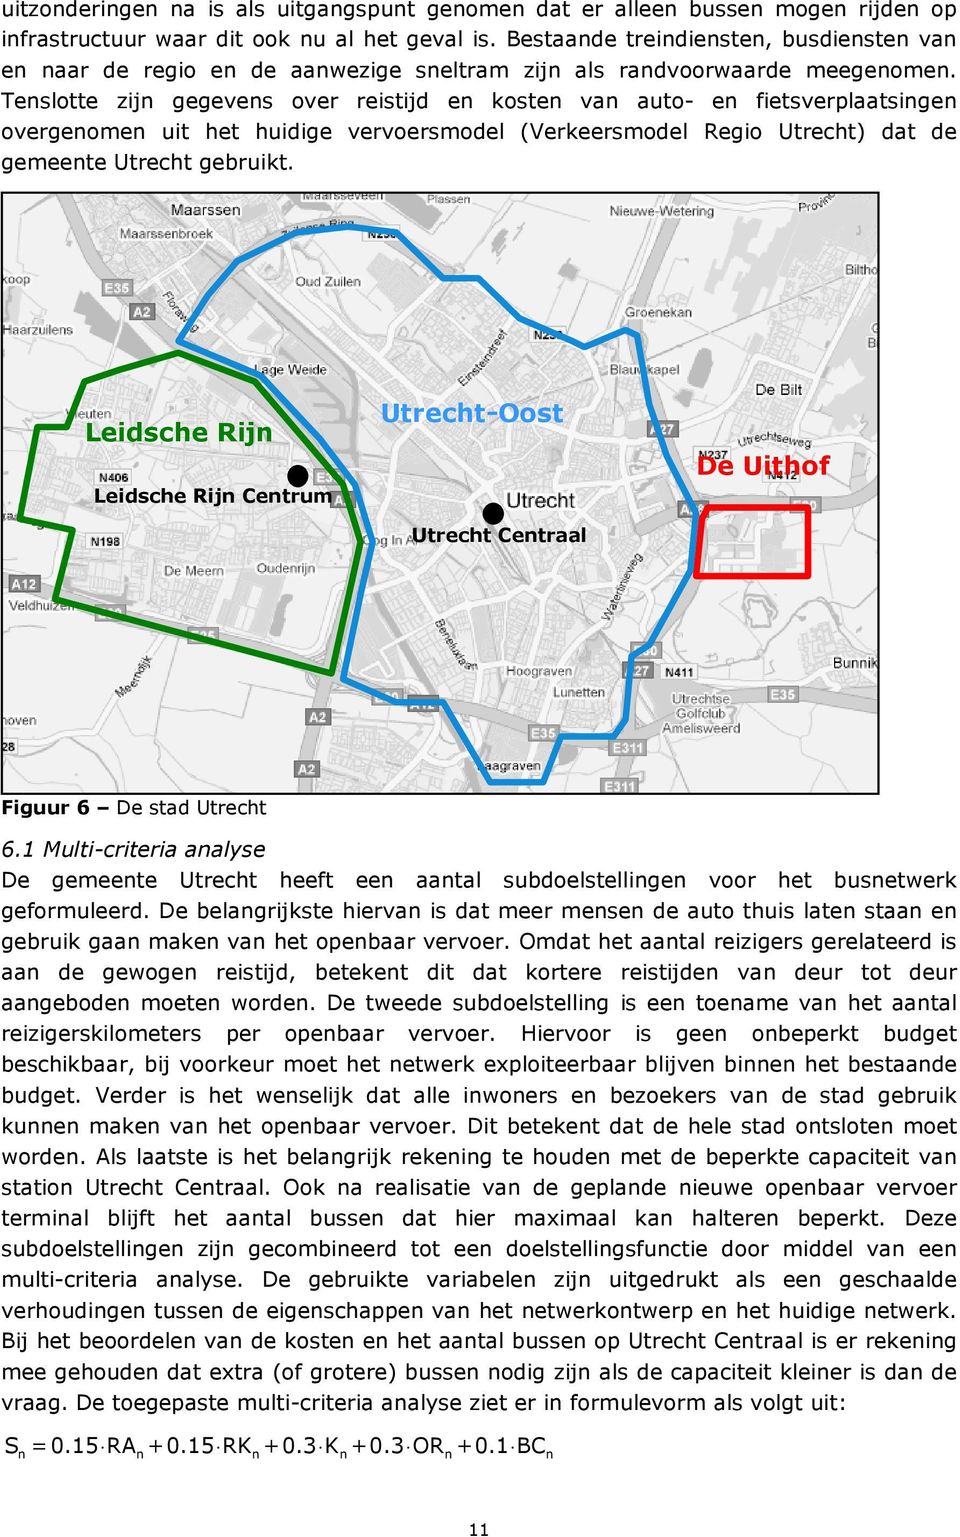 Tenslotte zijn gegevens over reistijd en kosten van auto- en fietsverplaatsingen overgenomen uit het huidige vervoersmodel (Verkeersmodel Regio Utrecht) dat de gemeente Utrecht gebruikt.